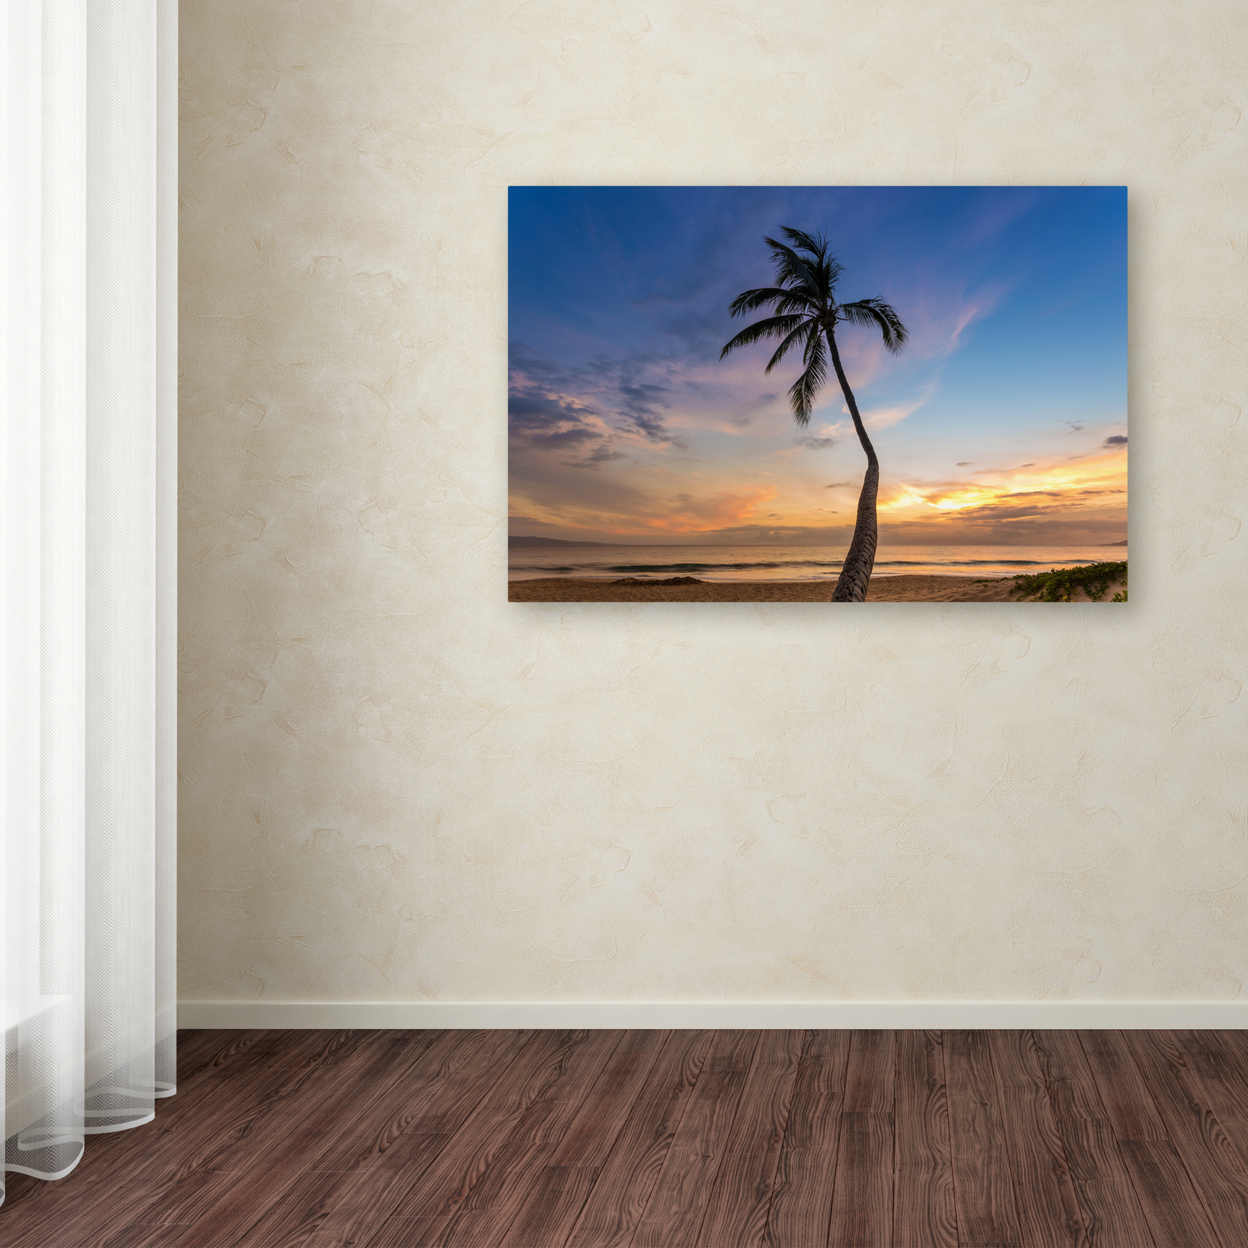 Pierre Leclerc 'Sunset Palm Tree' Canvas Art 16 X 24